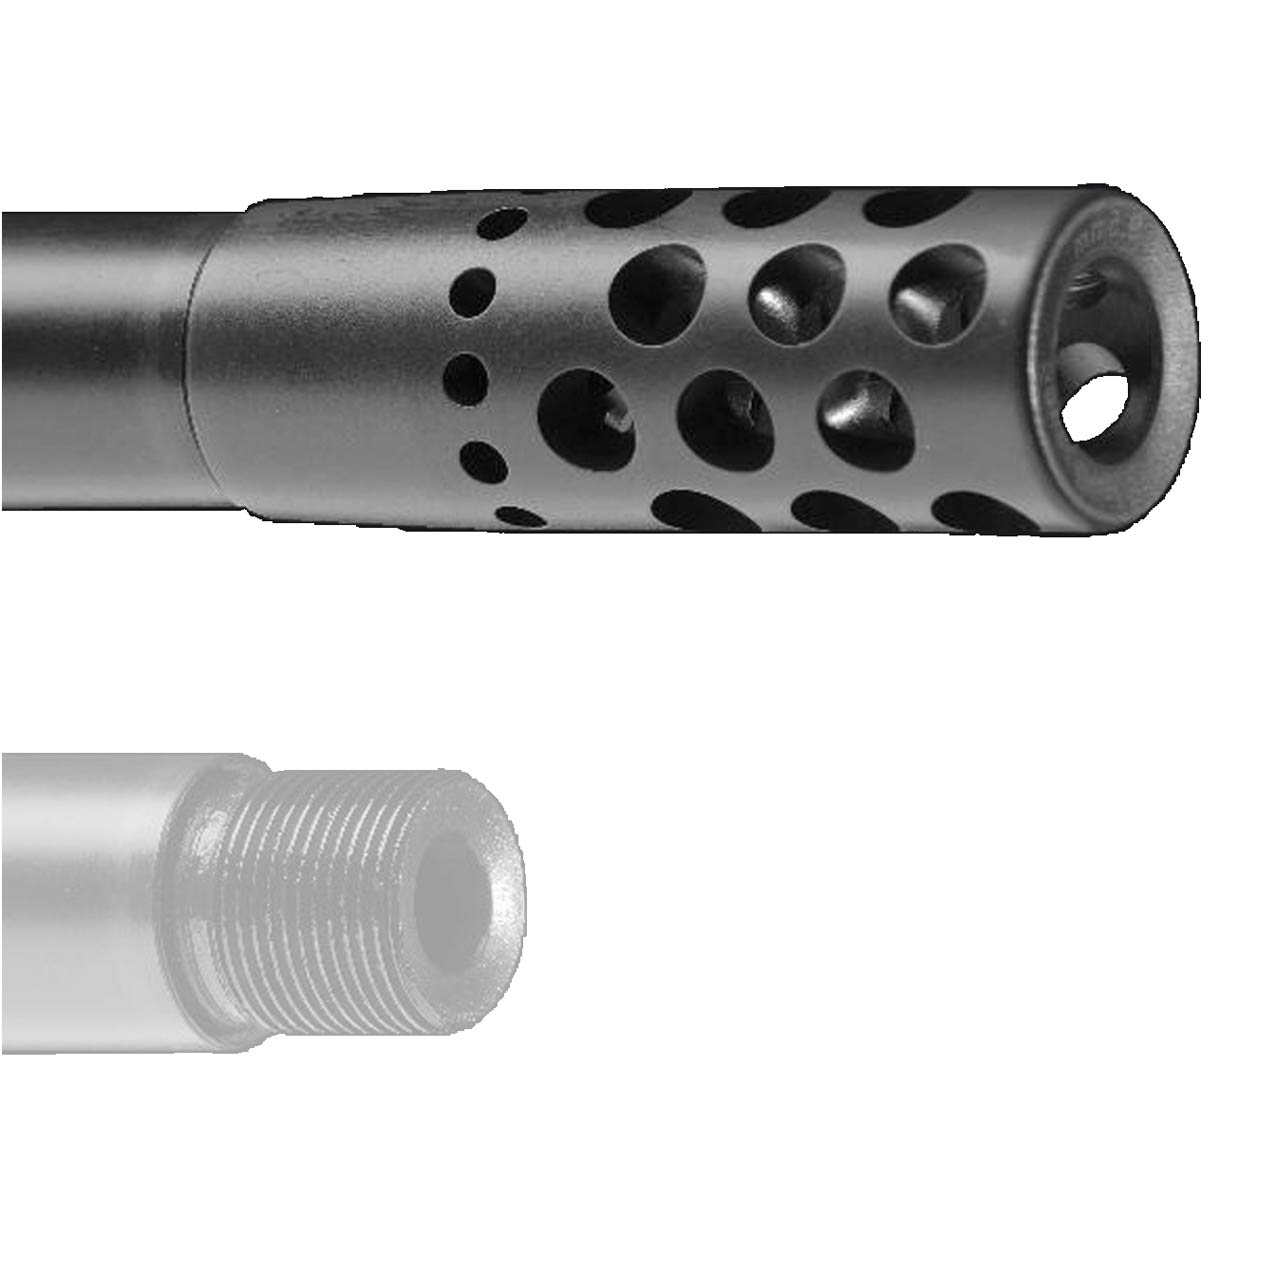 Blaser Mündungsbremse Dual-Brake M17x1  reduziert Rückstoß um 35-50 %  verhindert Hochschlagen der Waffe  vermindert Mündungsfeuer 